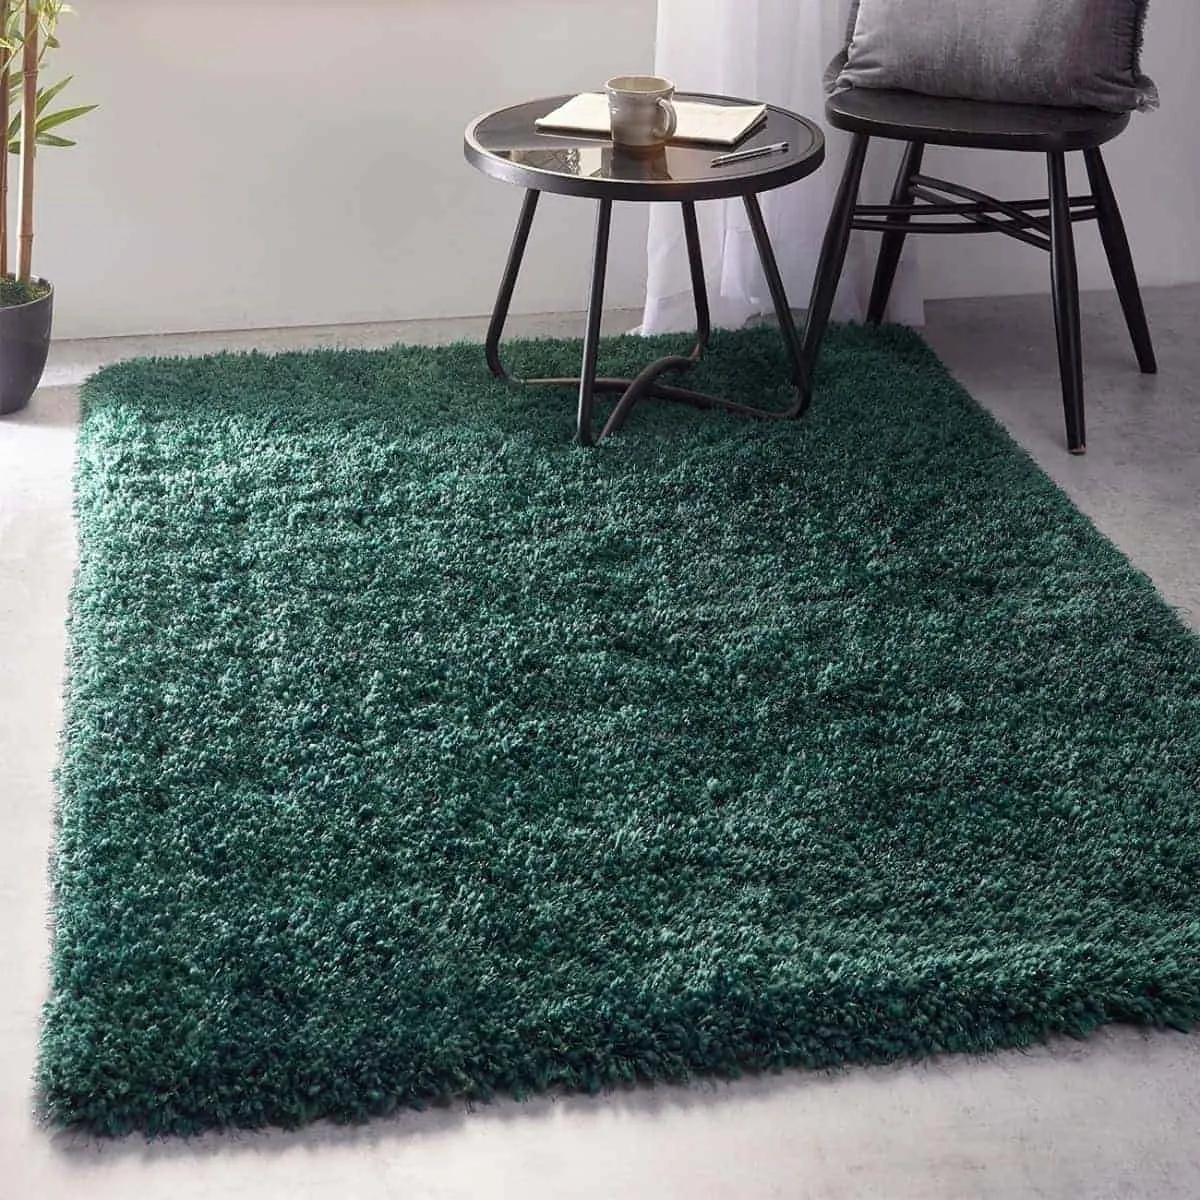 green polyester type carpet for living room